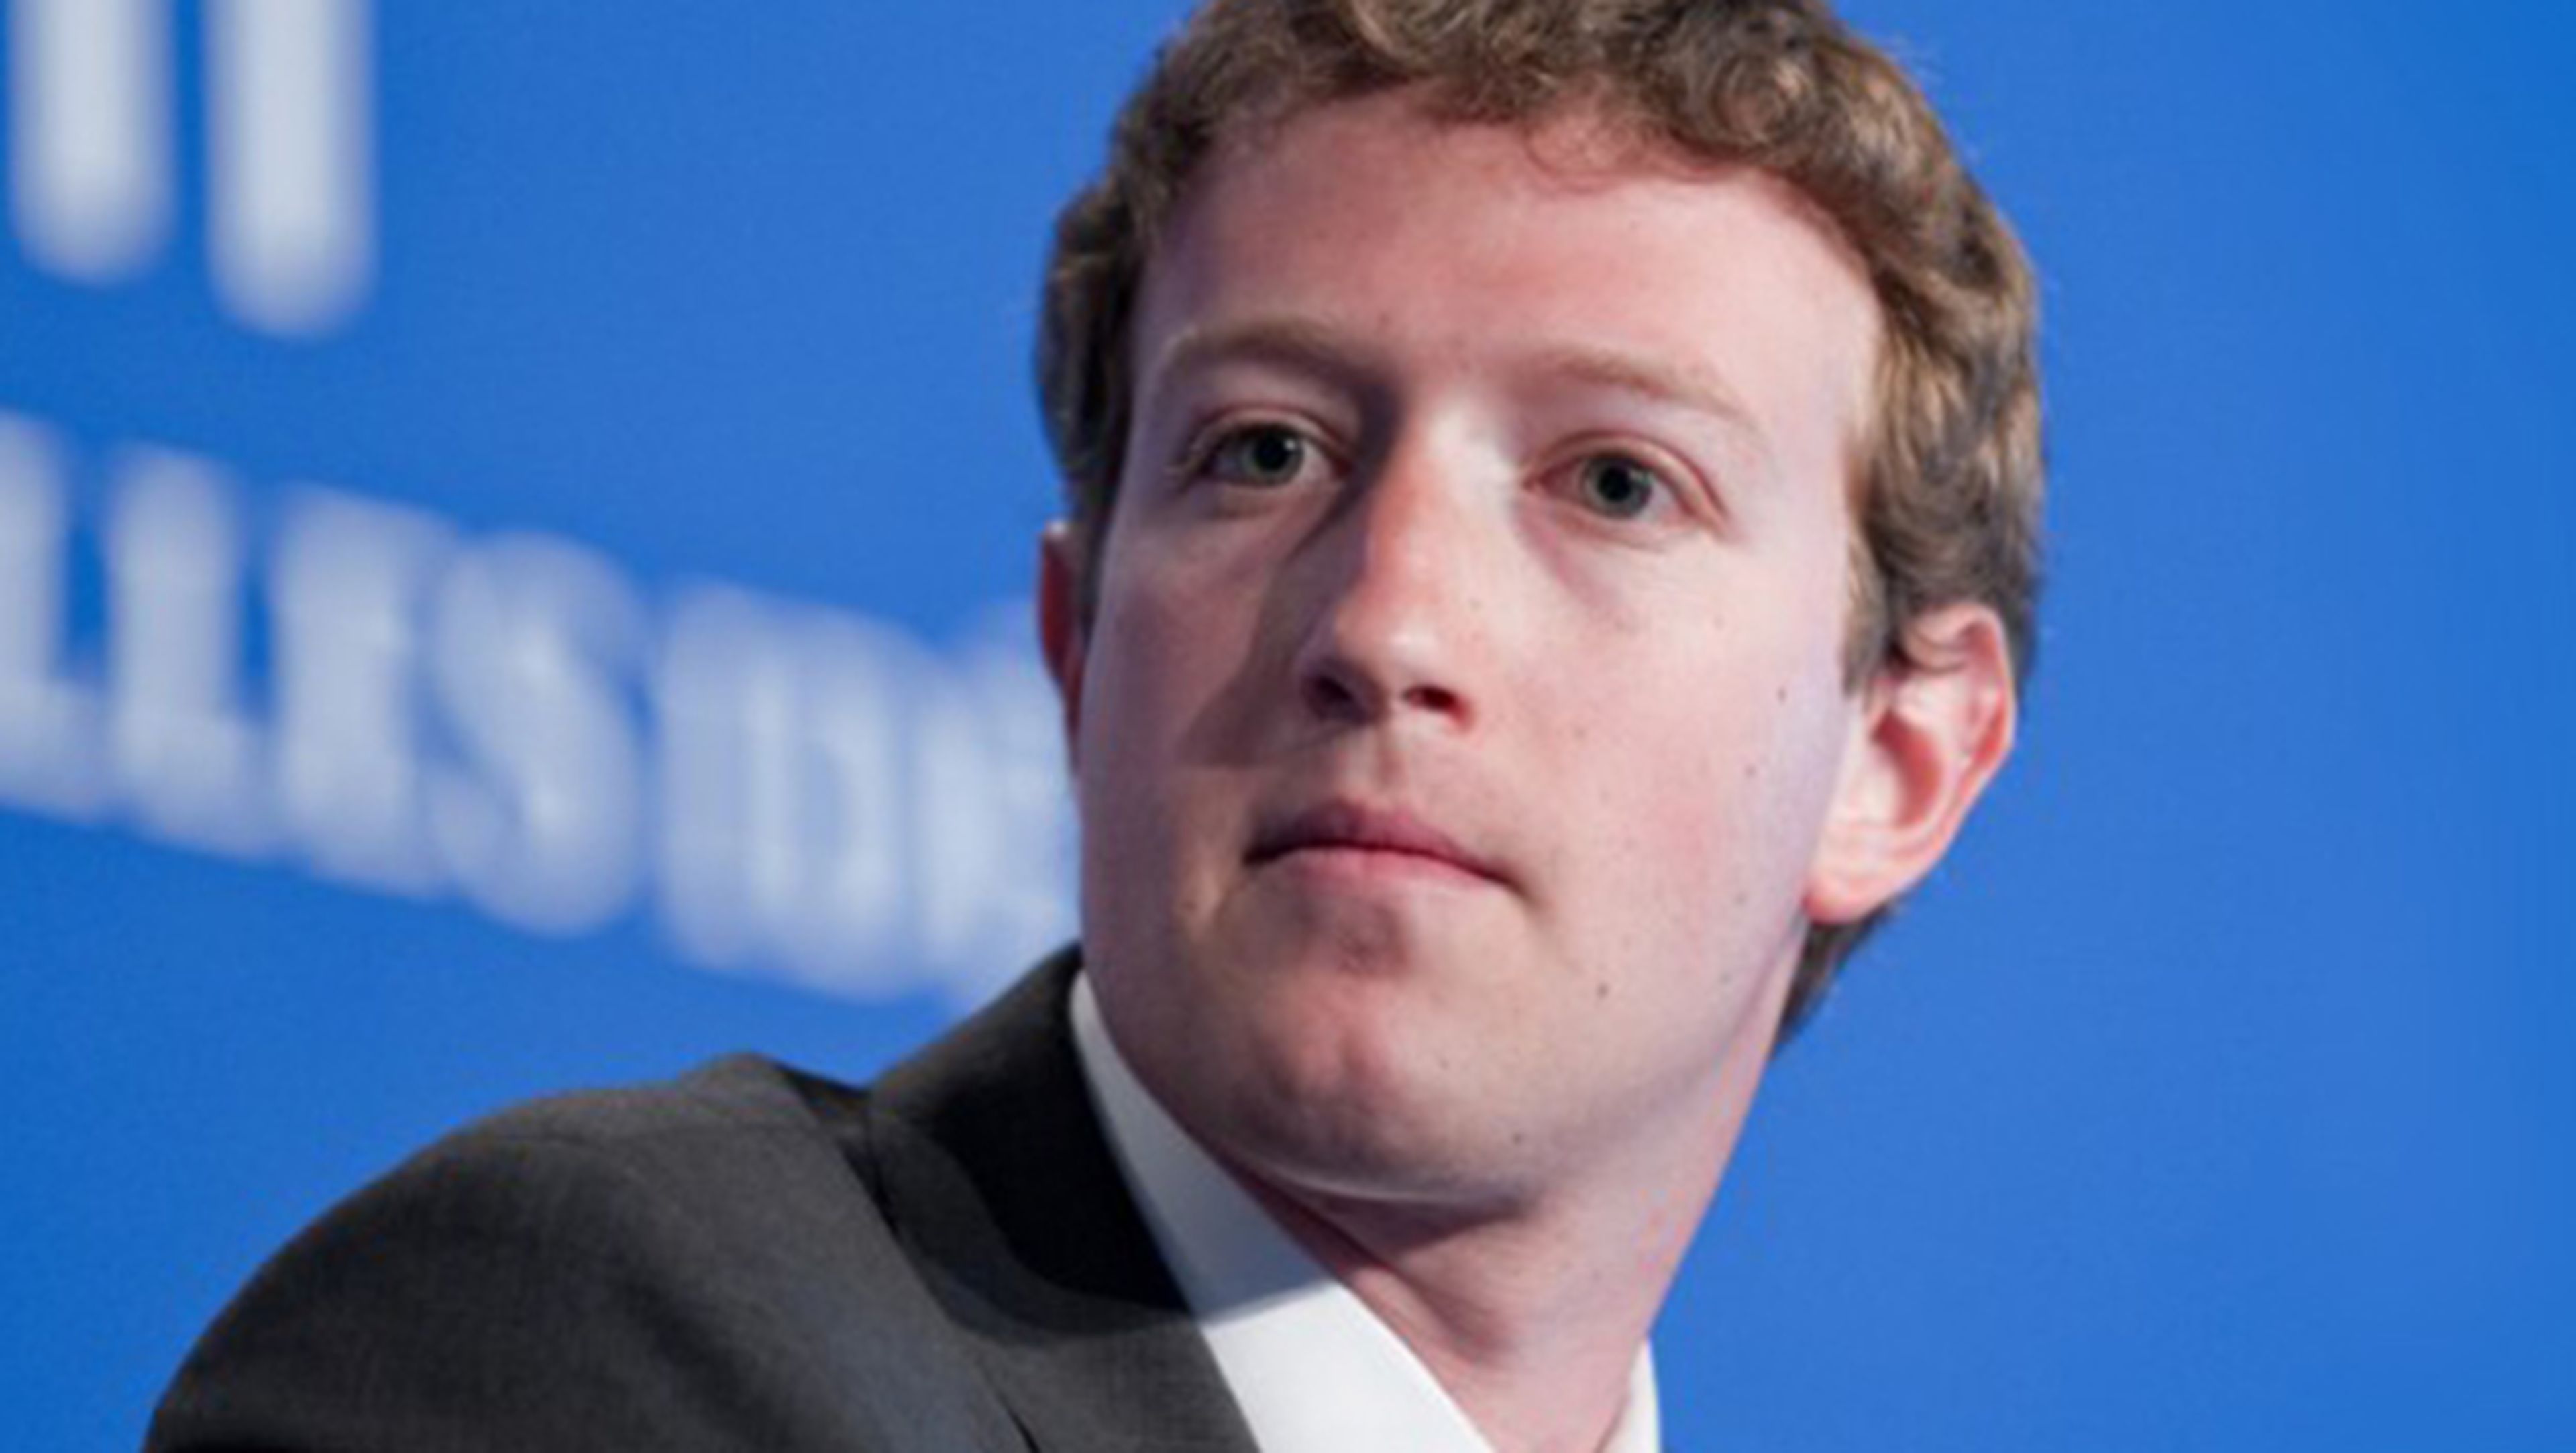 El CEO de Facebook quiere desarrollar un asistente virtual basado en la AI